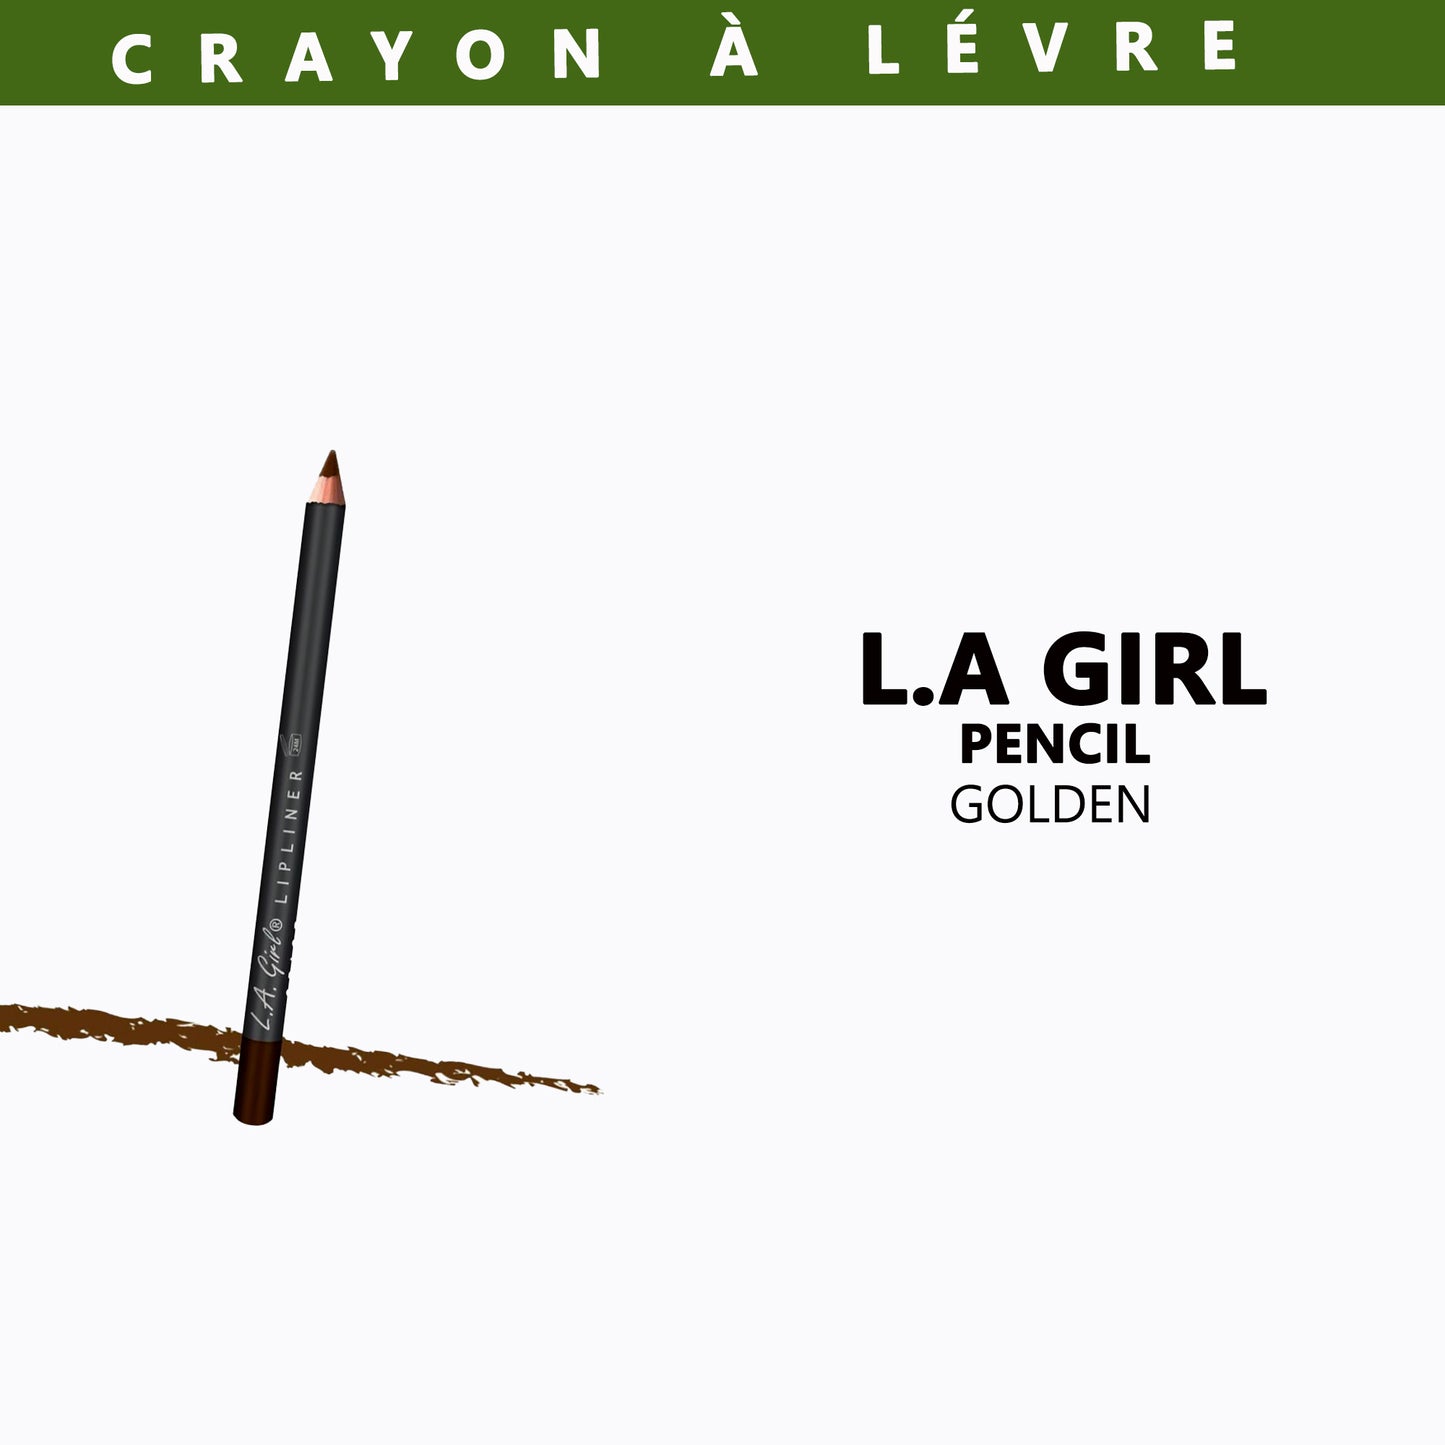 L.A. GIRL PENCIL - Crayon à Lèvres